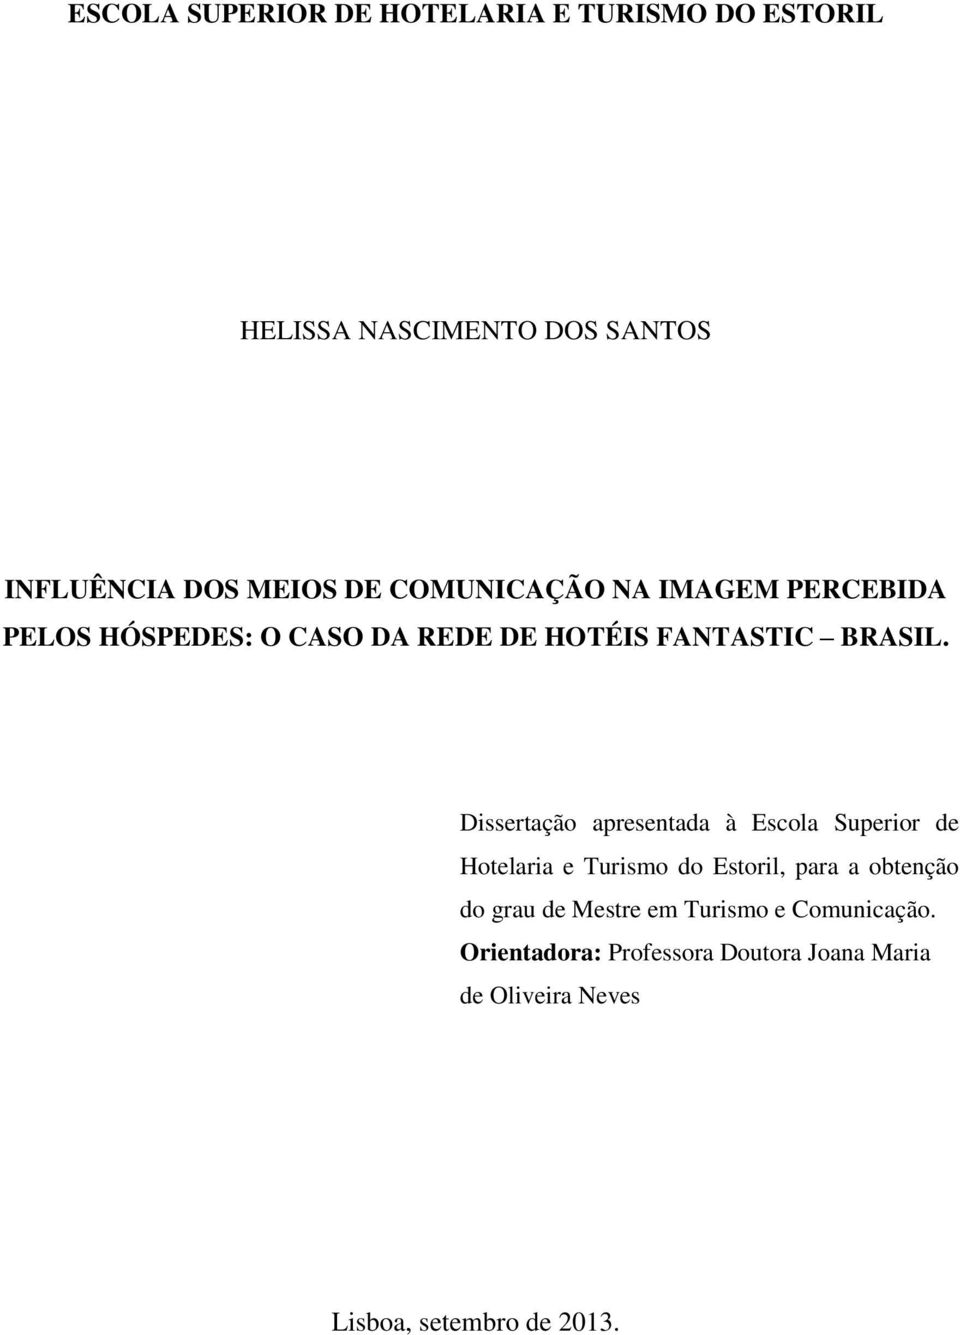 Dissertação apresentada à Escola Superior de Hotelaria e Turismo do Estoril, para a obtenção do grau de